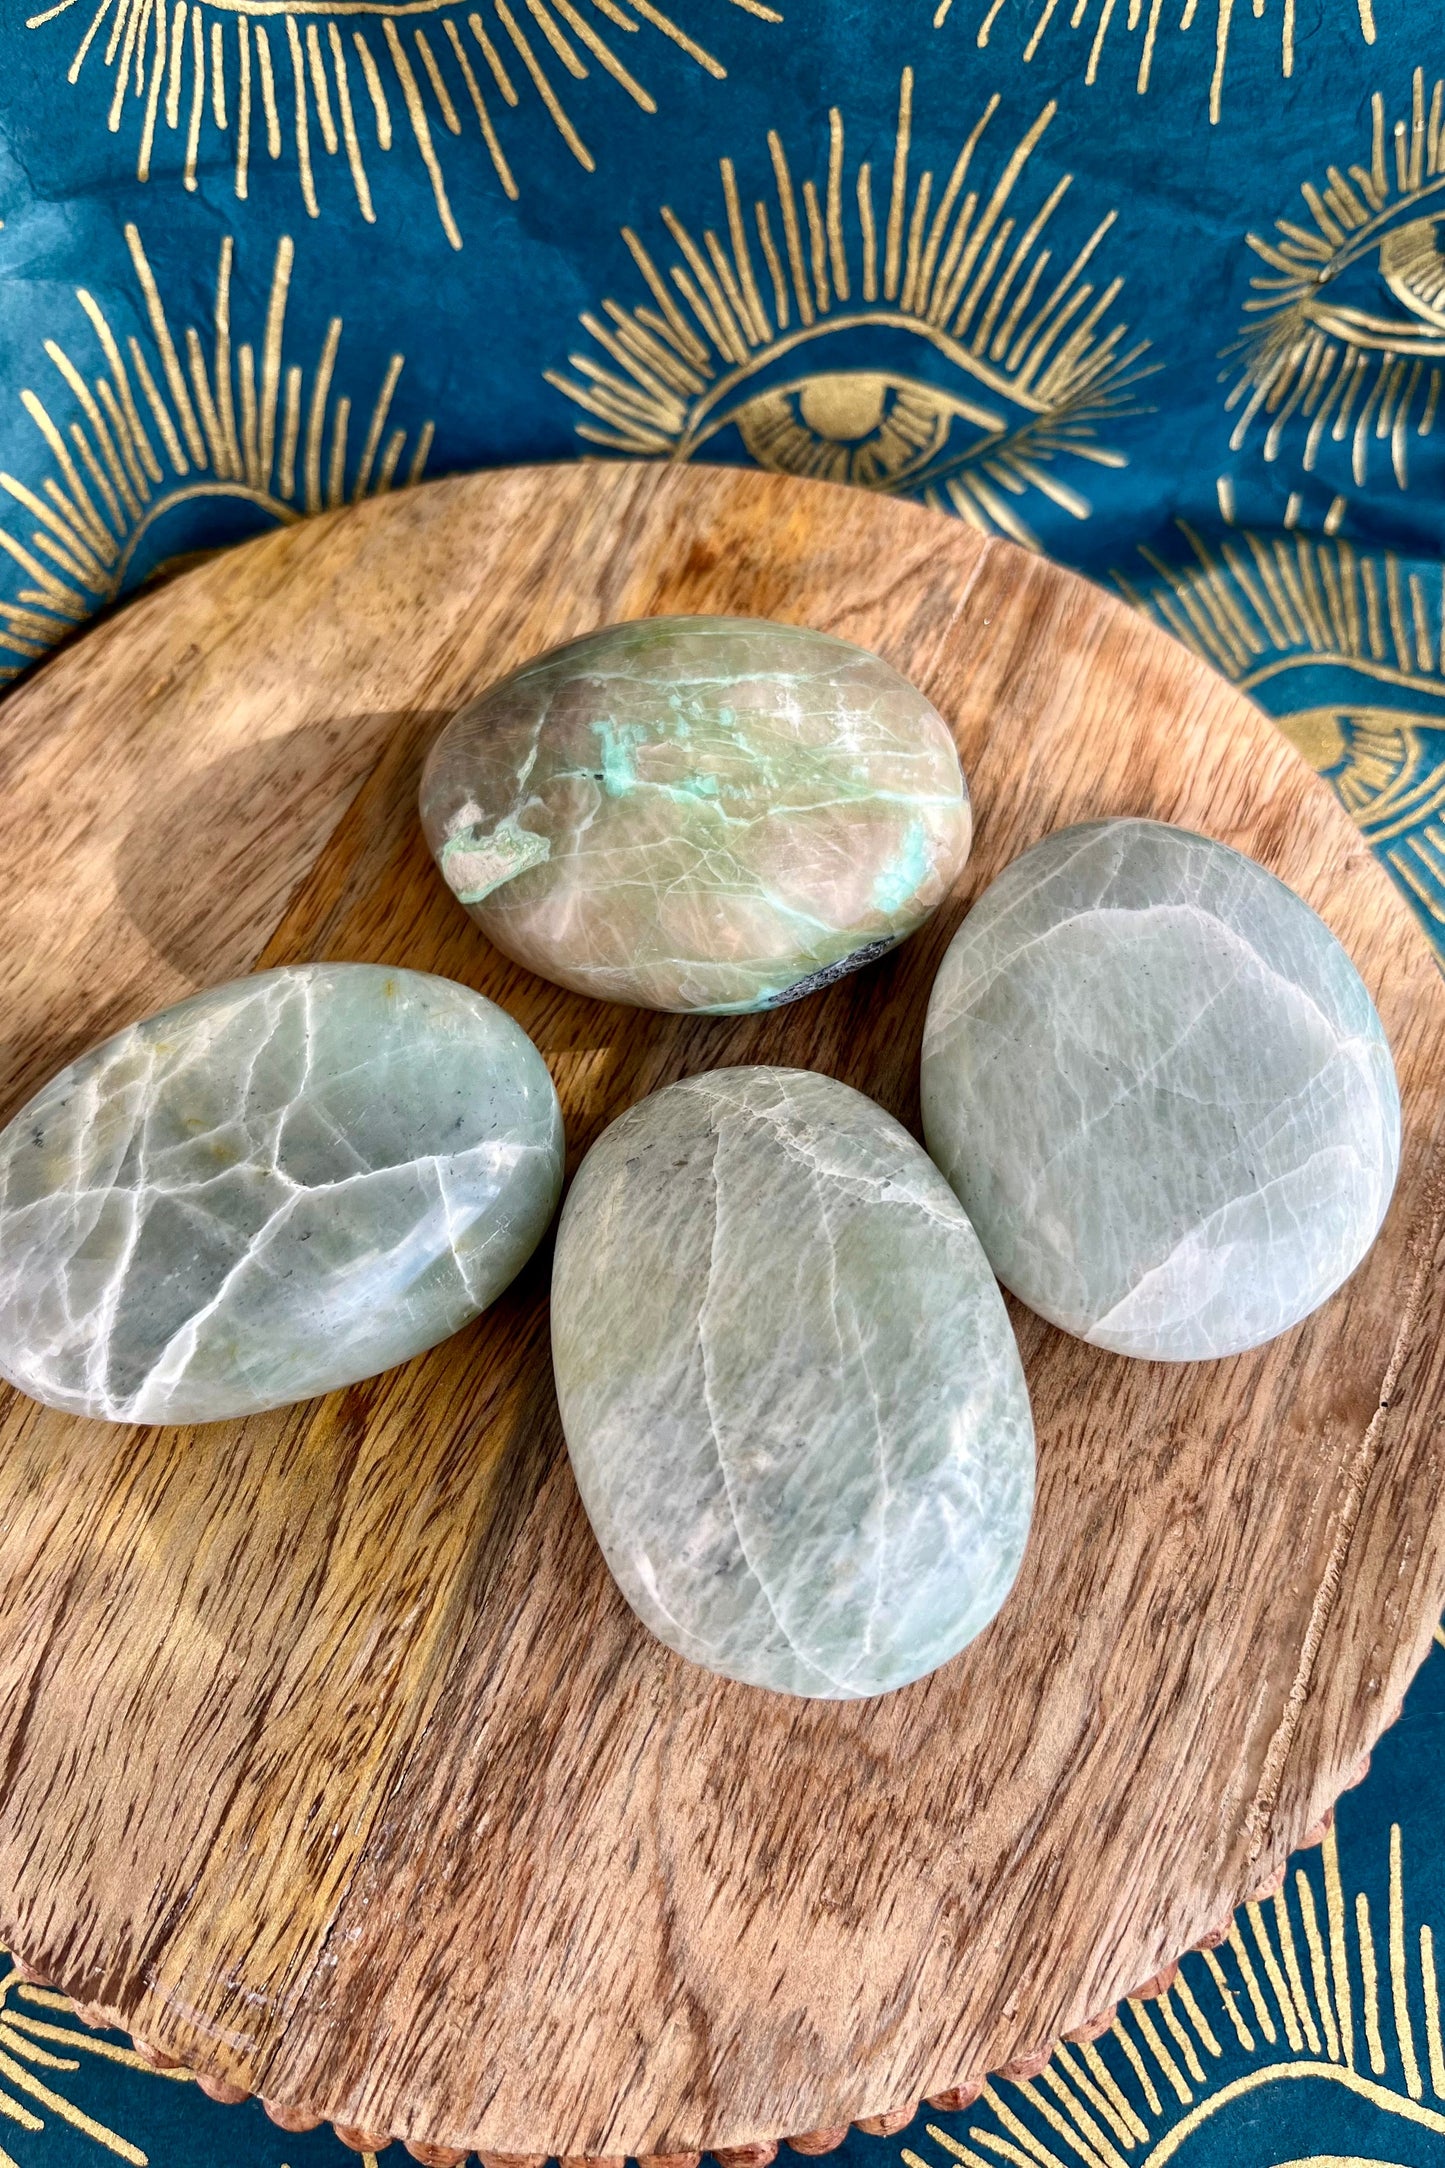 Green Moonstone / Garnierite palm stones crystals from GemCadet